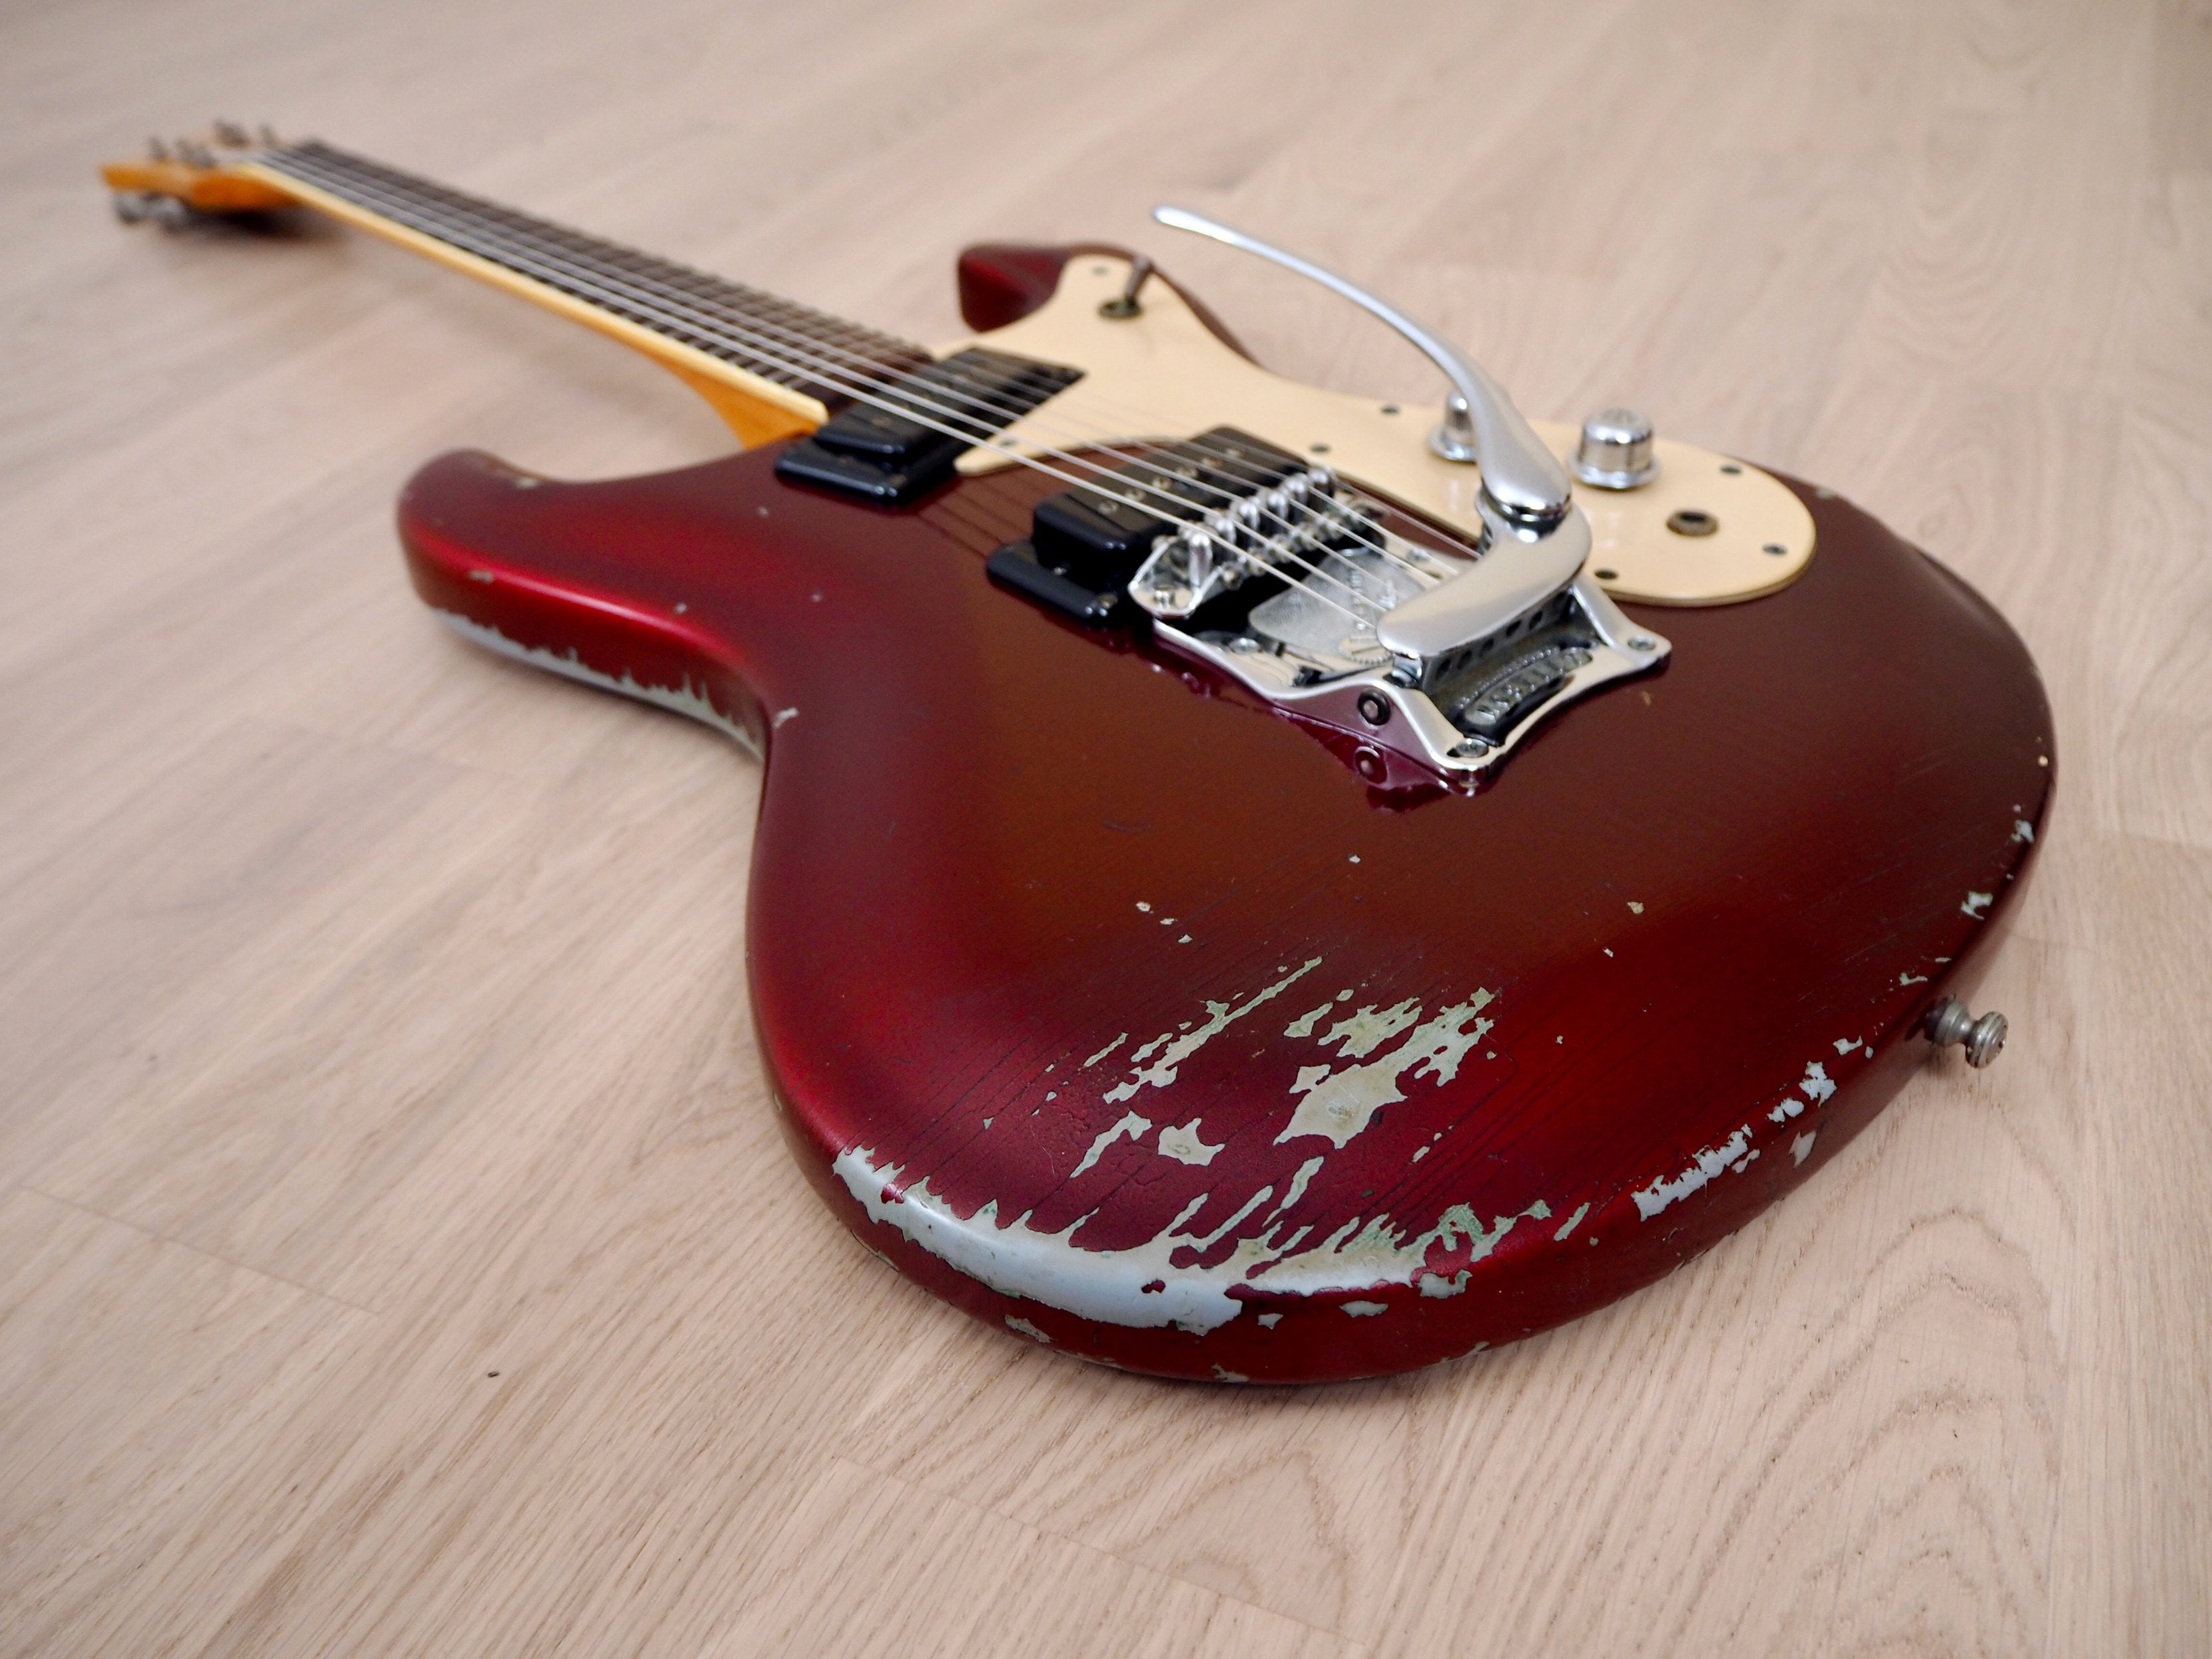 1978 Mosrite Ventures Model Mark I Vintage Electric Guitar, Candy Apple Red, USA-Made